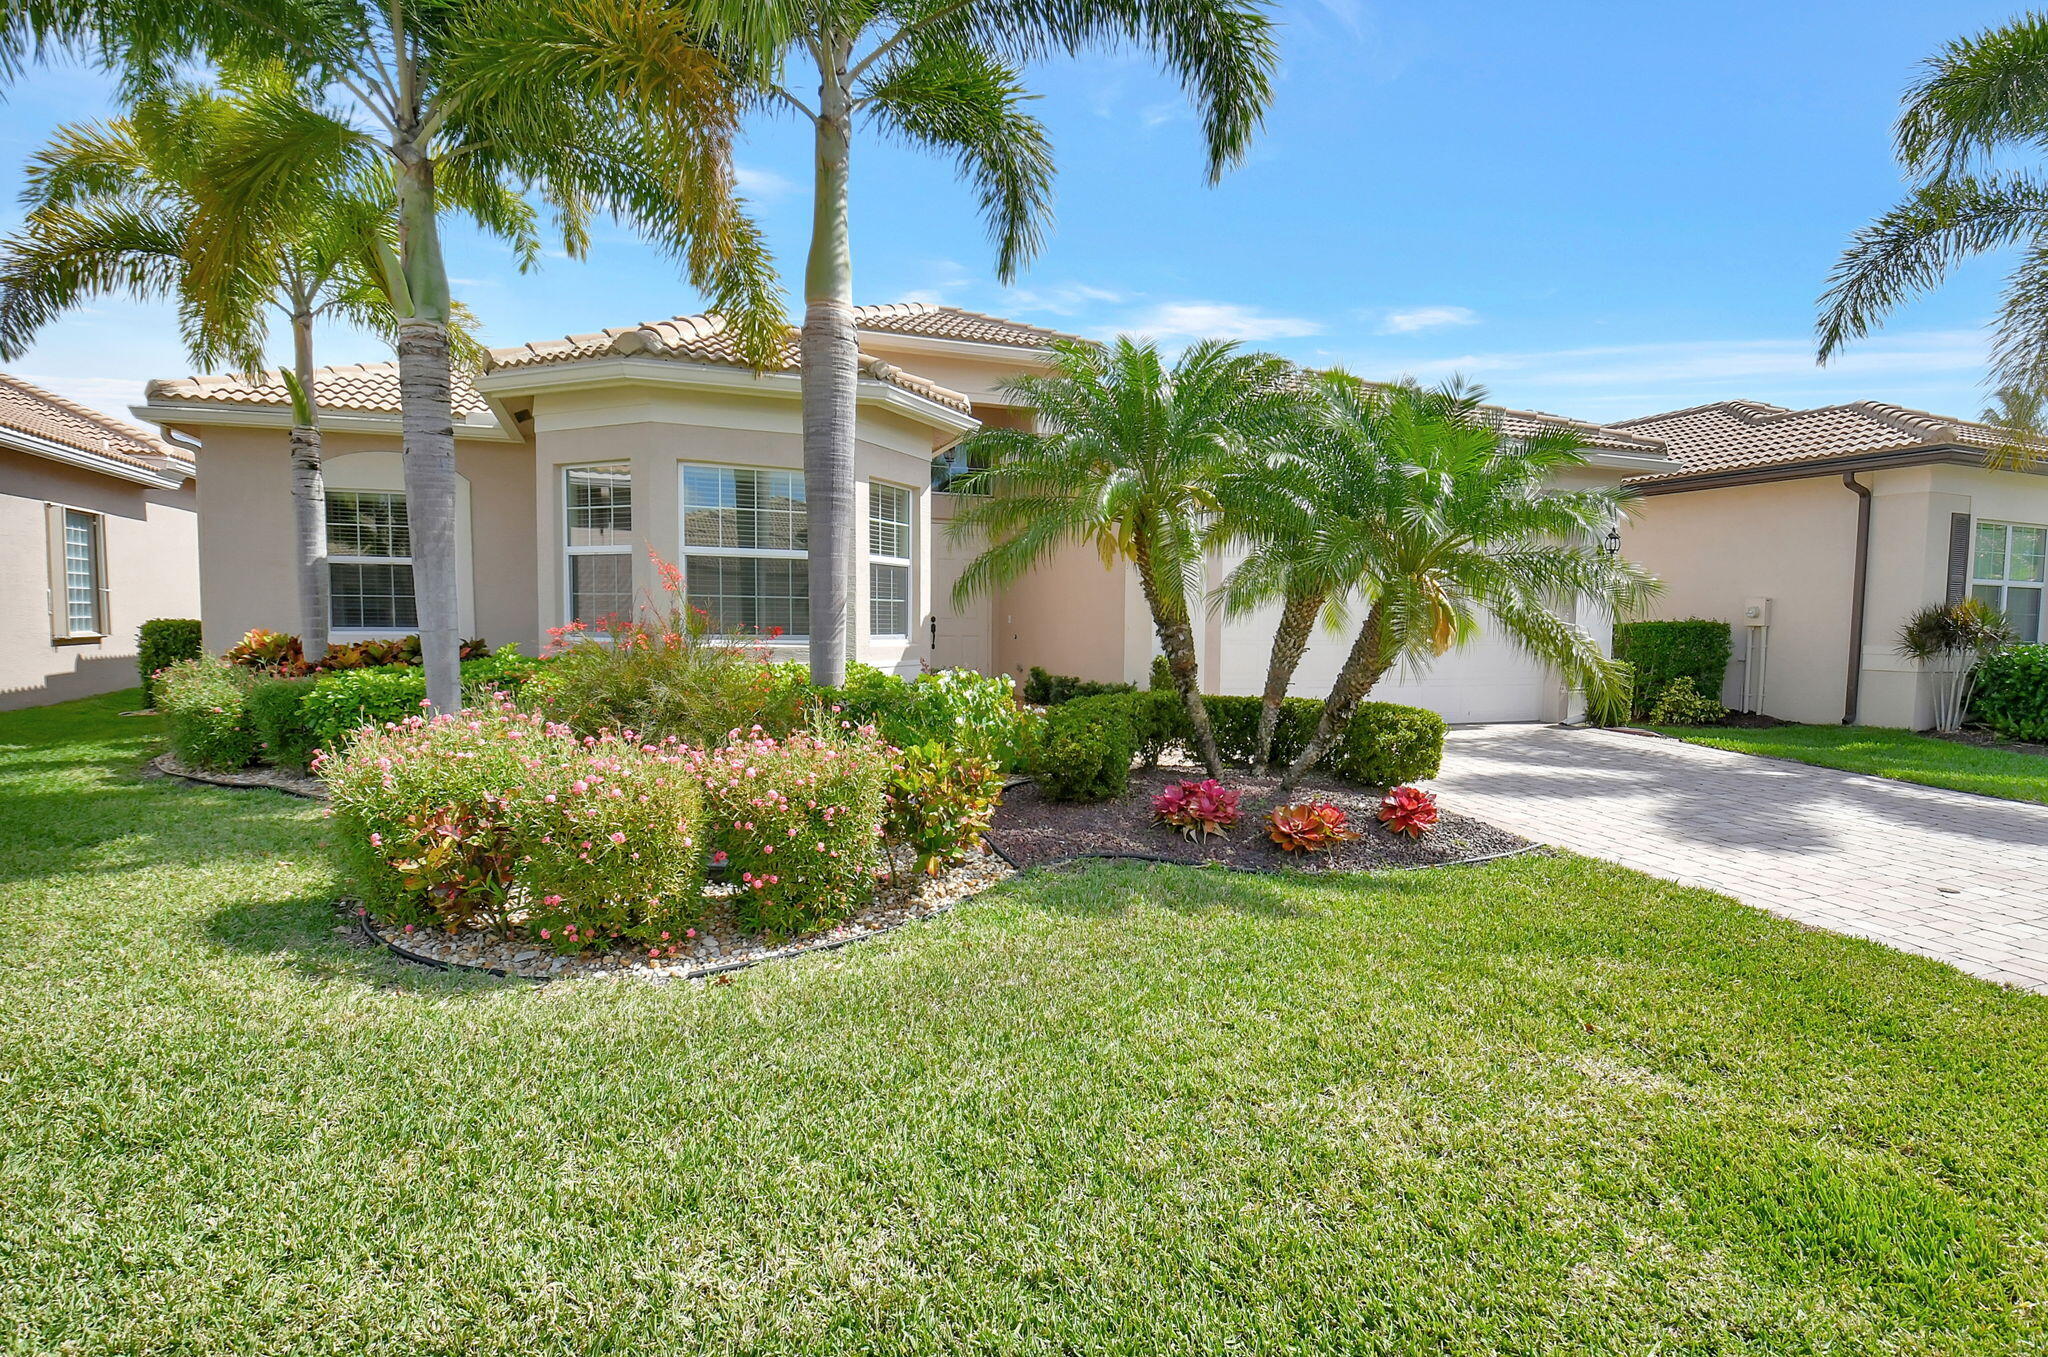 Property for Sale at 8169 Green Mountain Road, Boynton Beach, Palm Beach County, Florida - Bedrooms: 3 
Bathrooms: 2  - $949,000